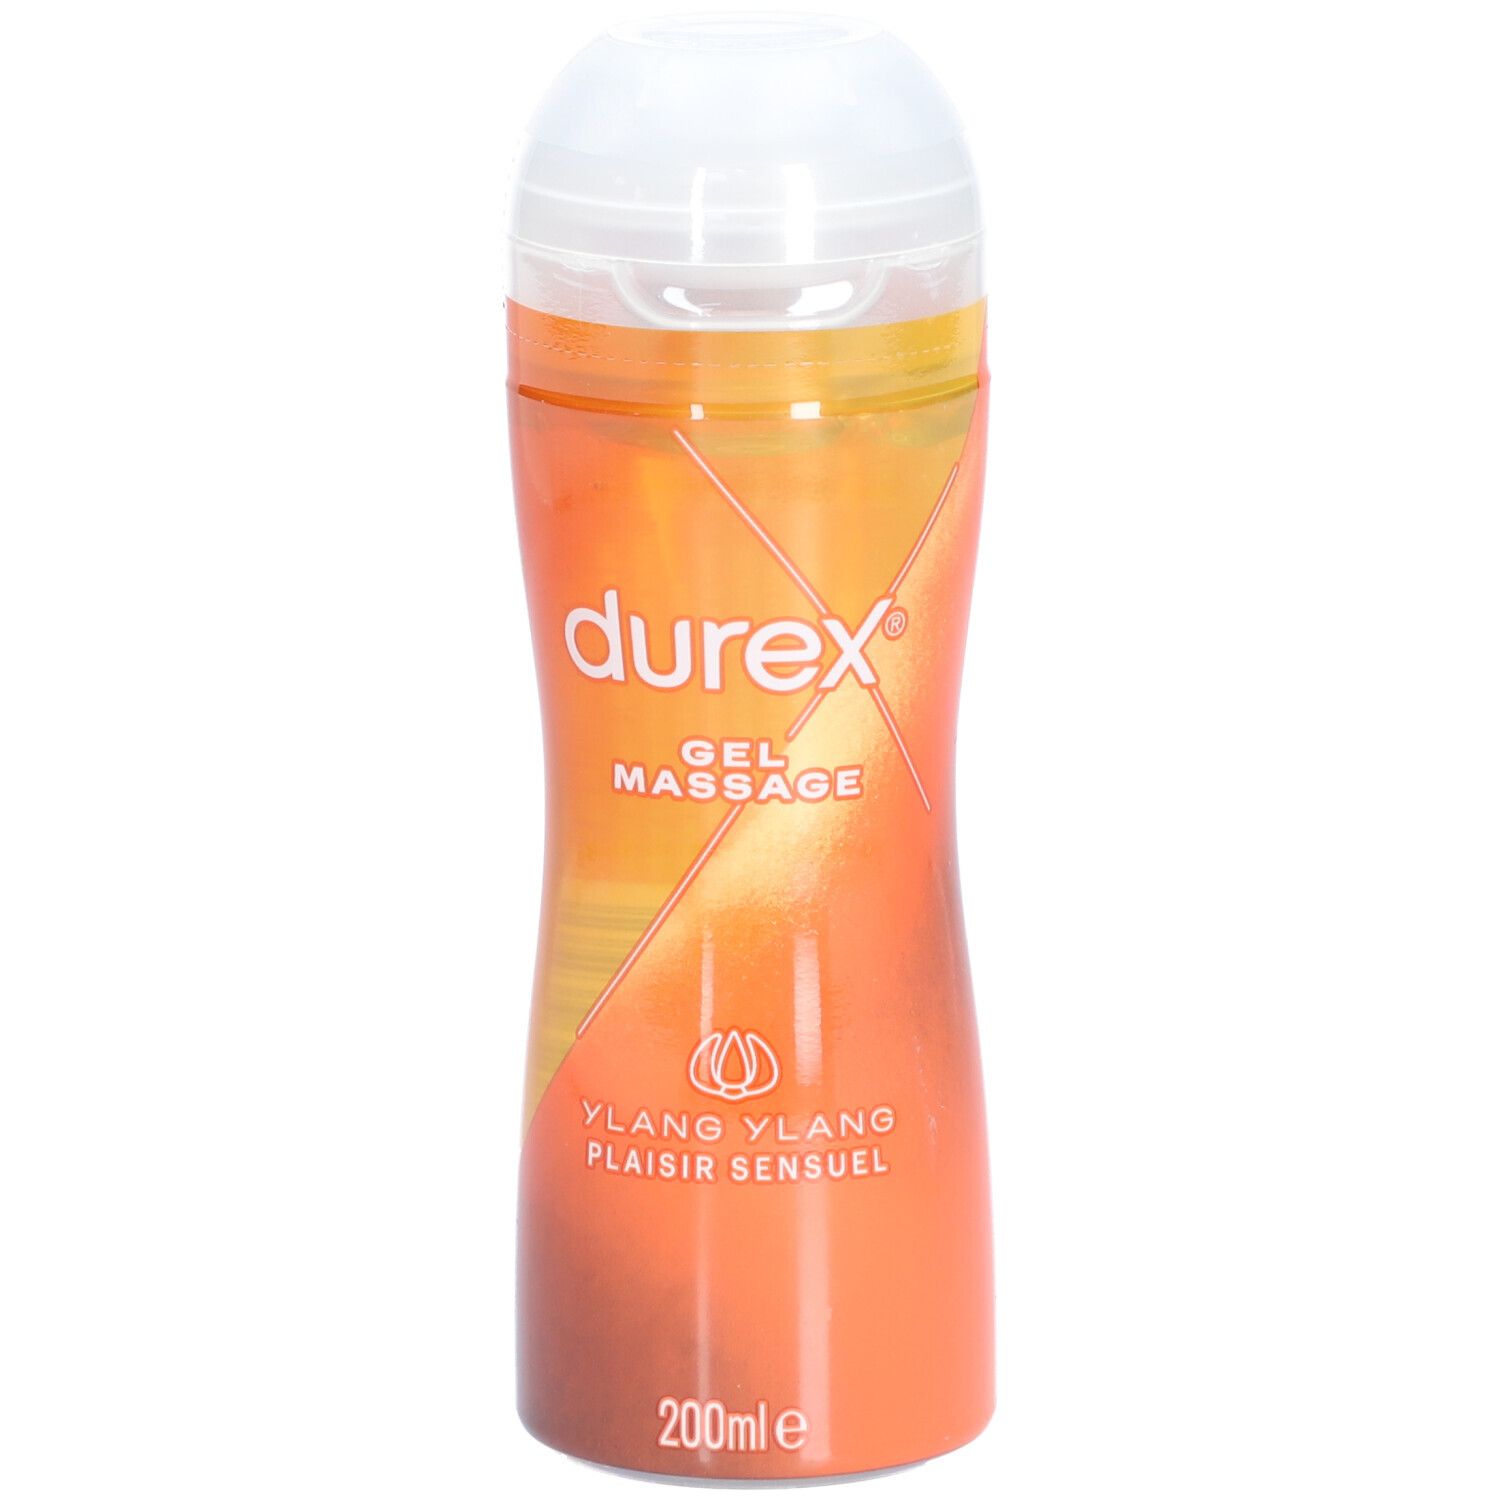 durex® Play massage gel sensuel ylang ylang